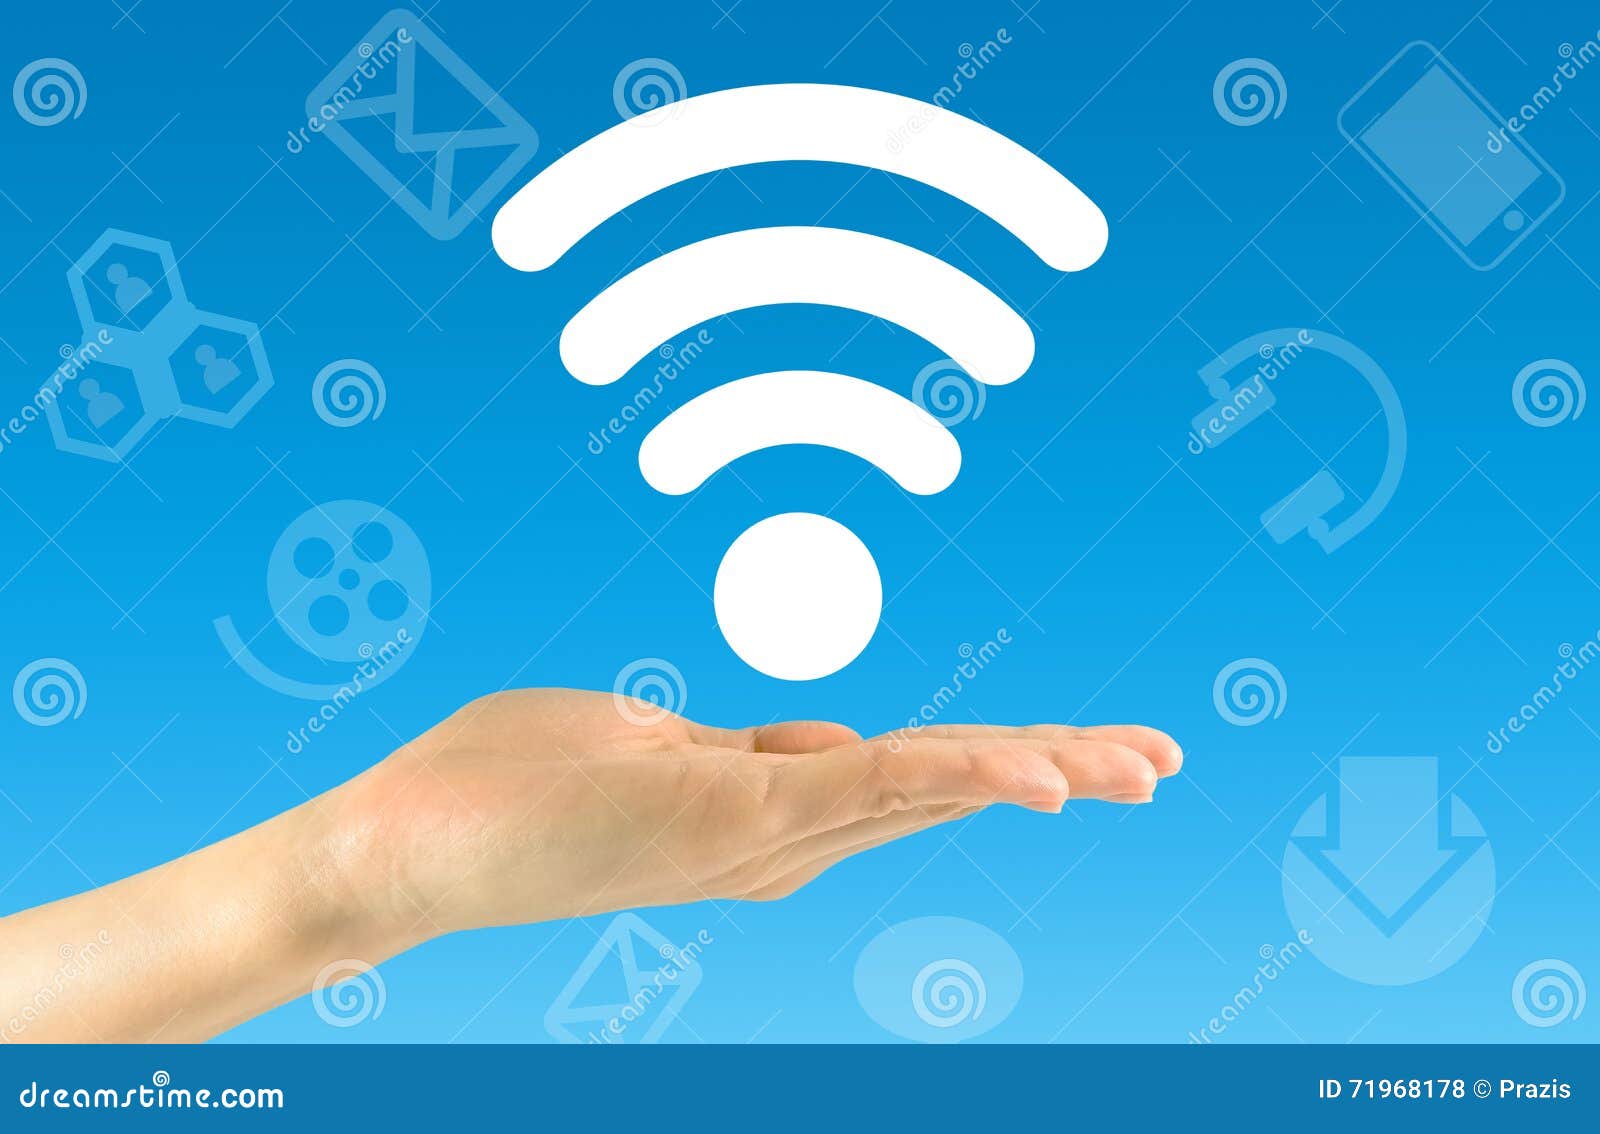 Скинь вай фай. Беспроводной интернет. Иконка вай фай. Беспроводные сети Wi-Fi. День вайфай.